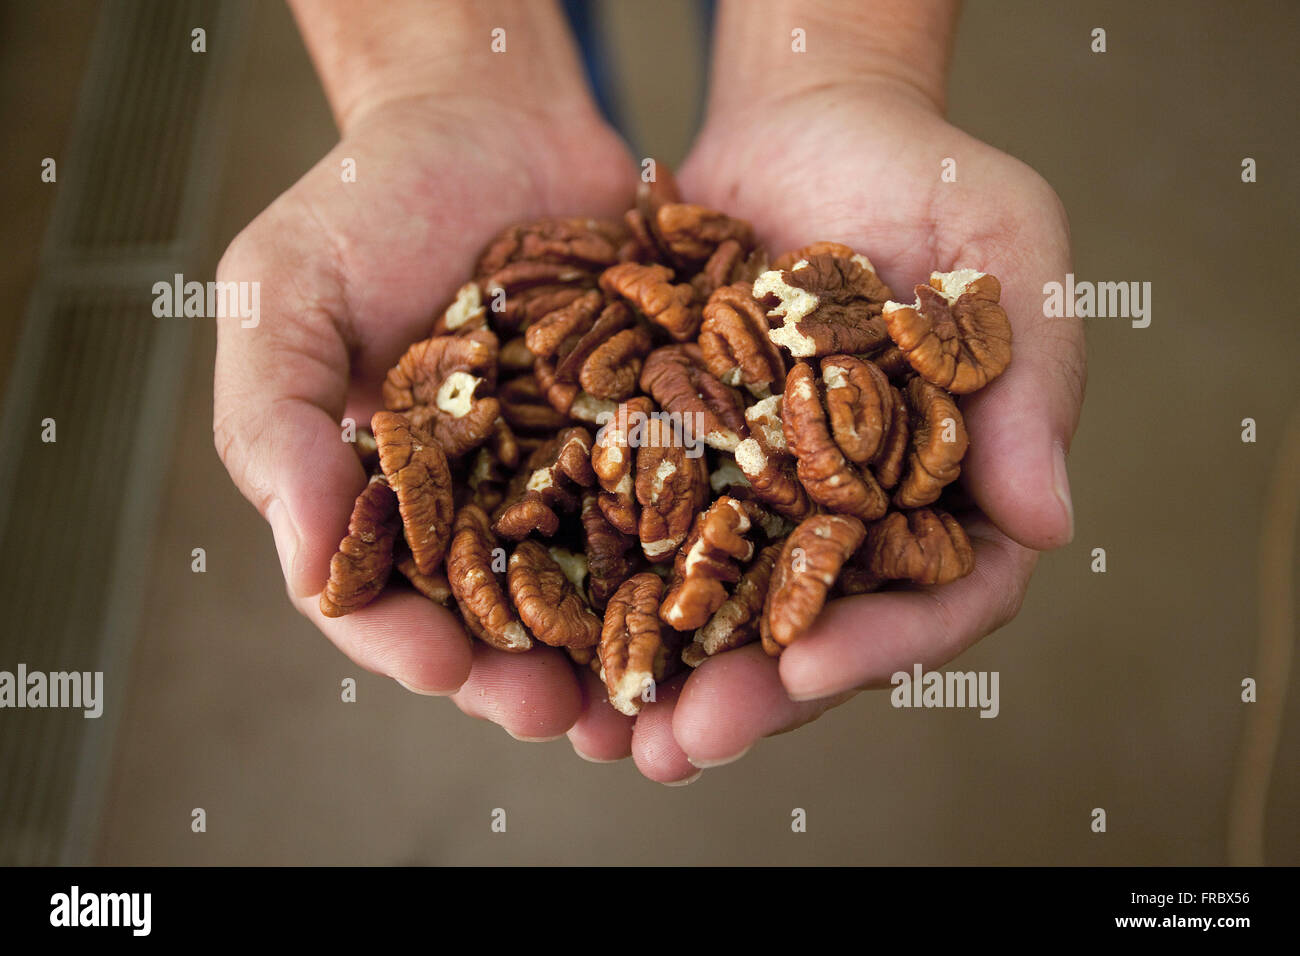 Les noix de pécan ou morceau choisi aux fins de commercialisation Banque D'Images